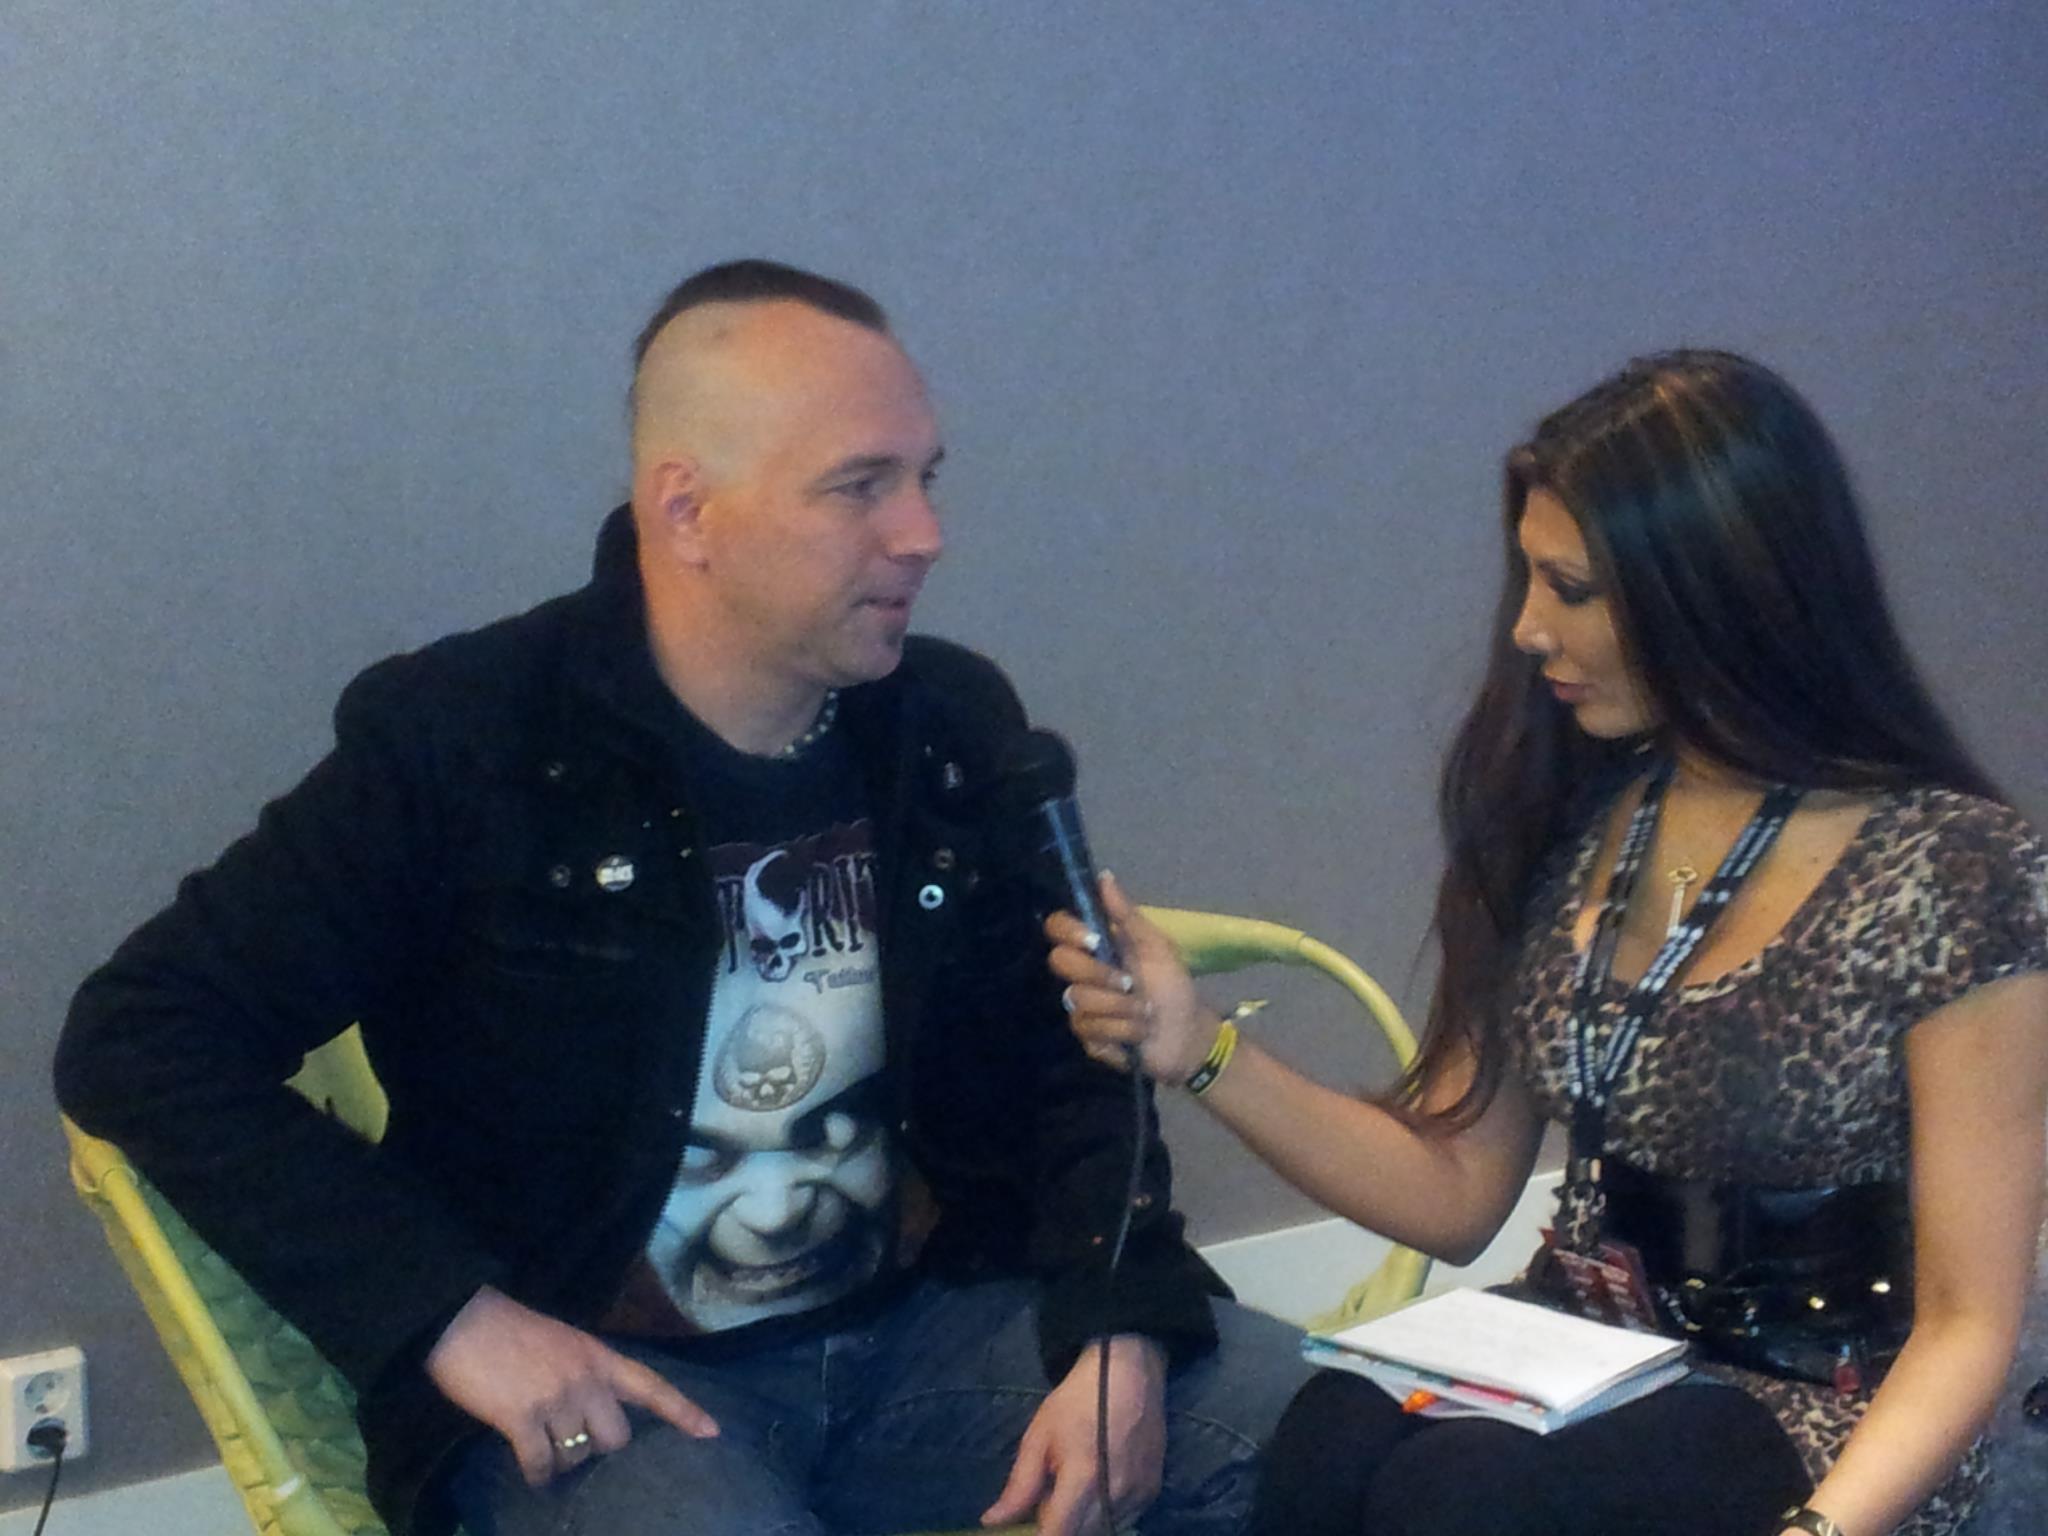 Jasmin interviewing Atila of Mayhem for Inferno Tv